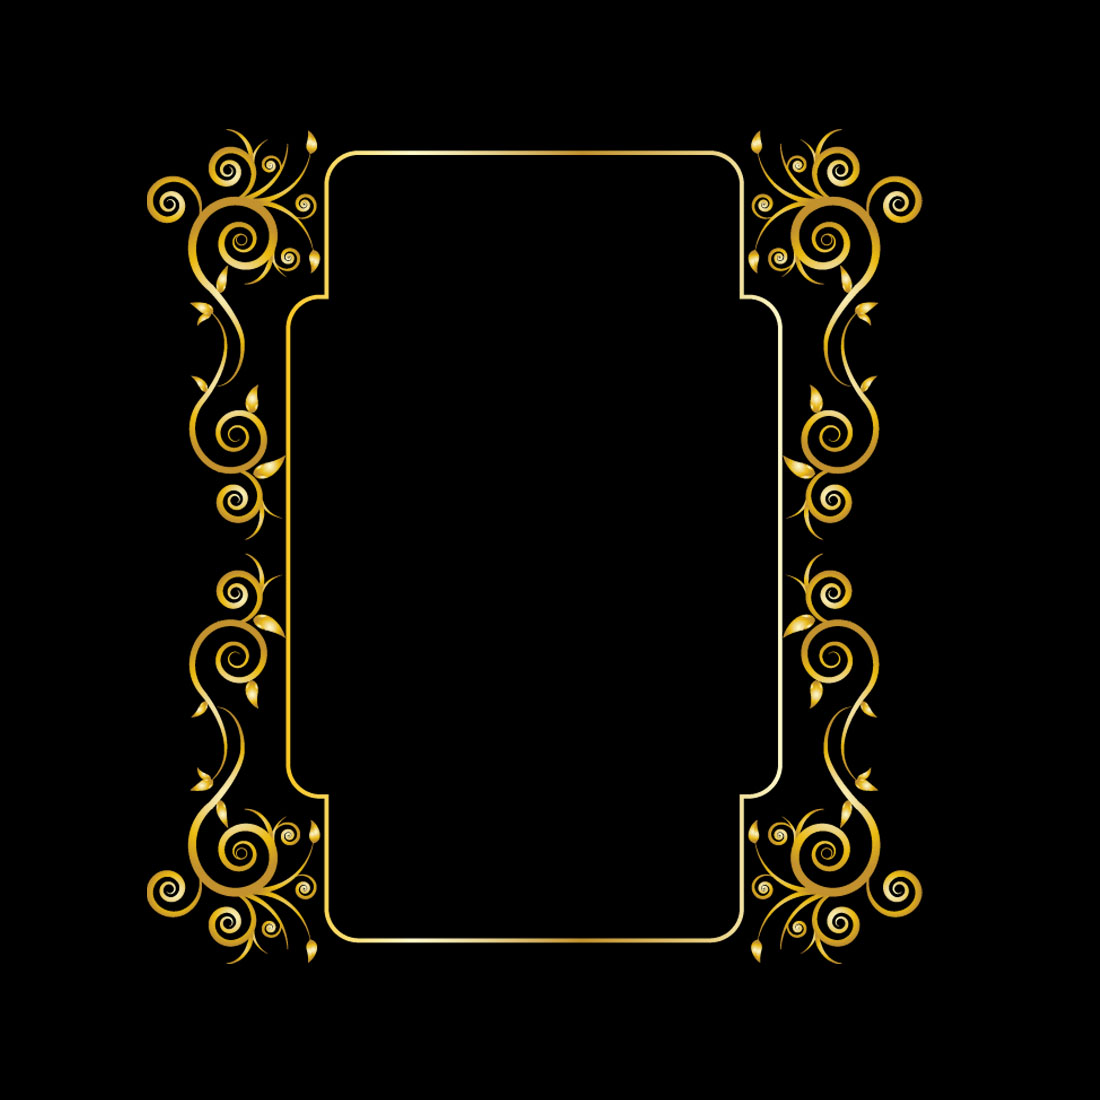 Floral Golden Ornament Design on Black Color cover image.